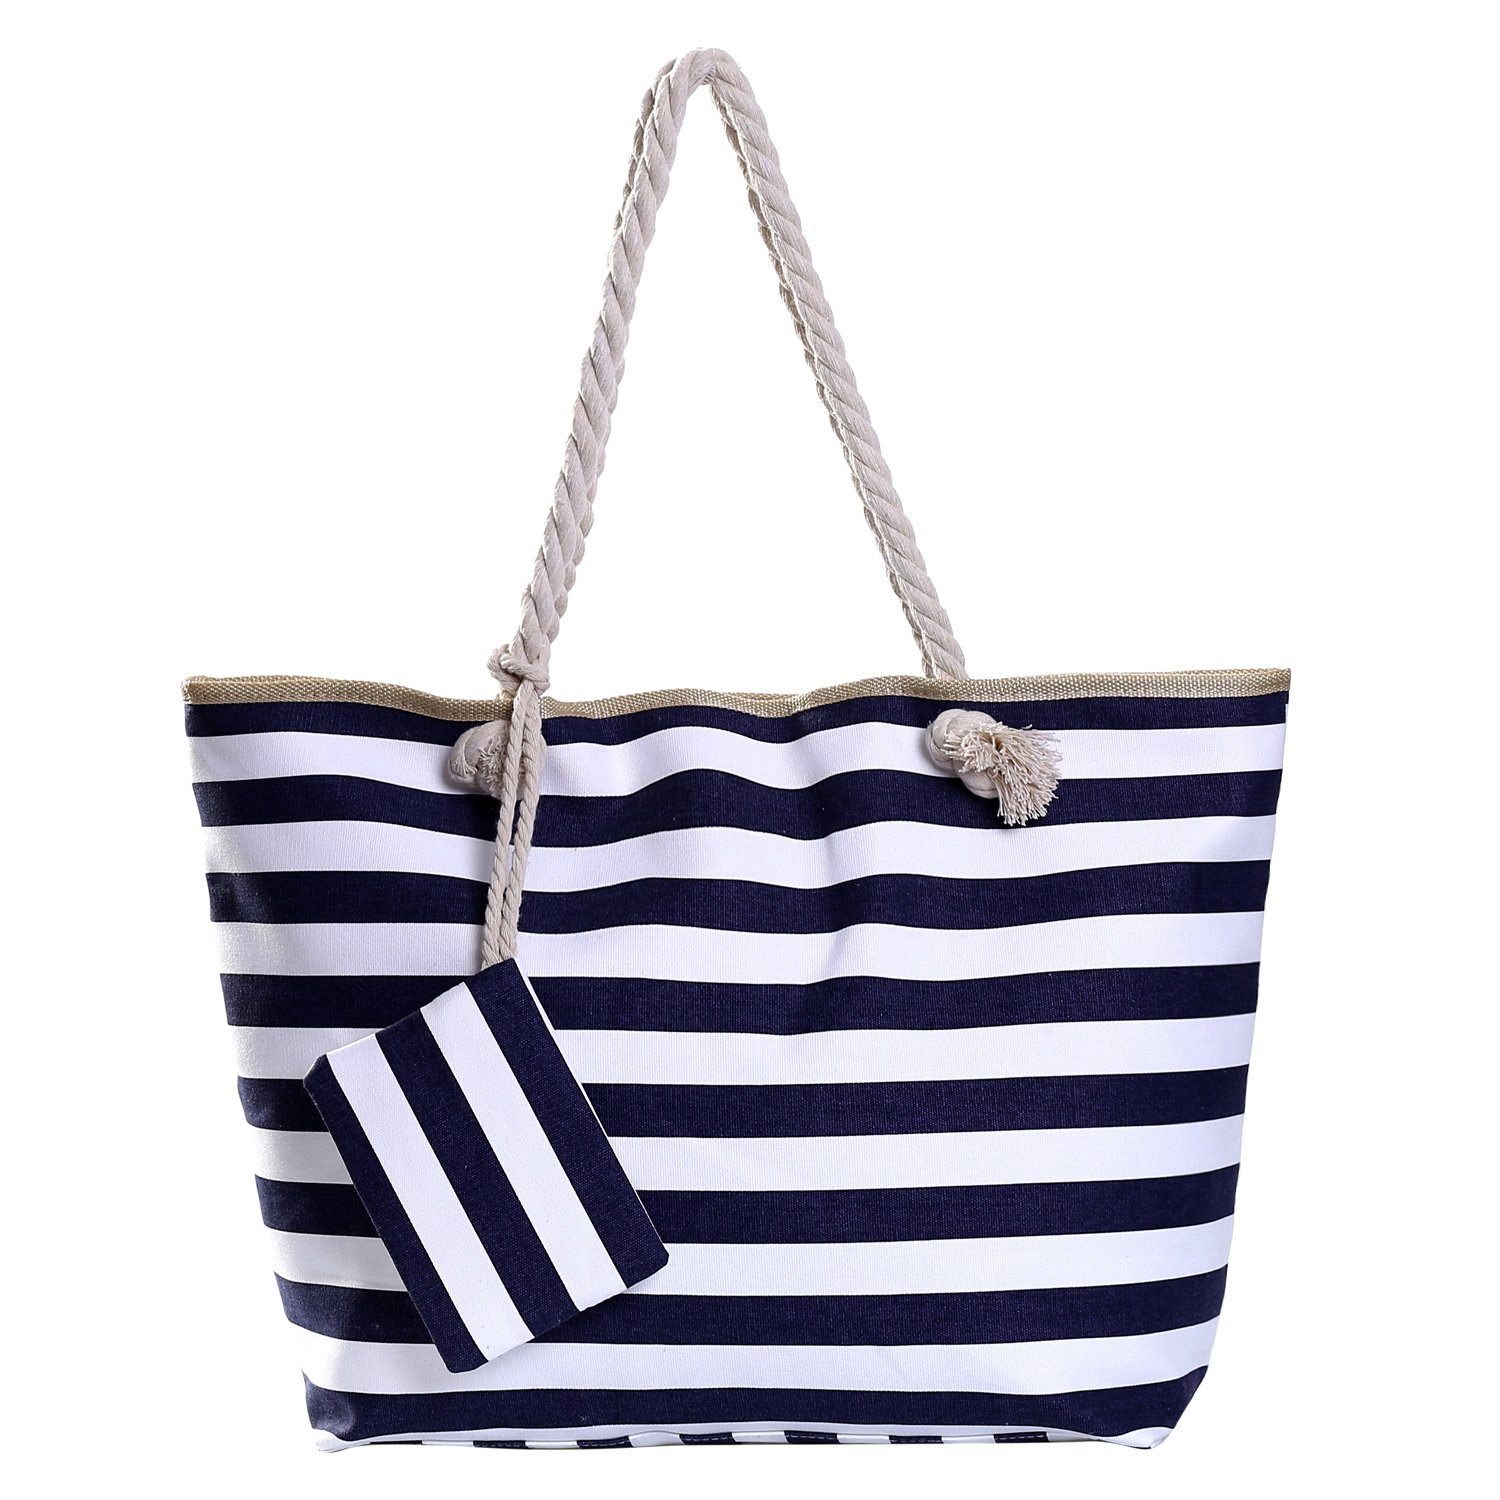 mit kleinem Reißverschluss, Strandtasche, Shopper dunkelblau-weiß DonDon (2-tlg), Beutel Große 1 Strandtasche Tasche gestreift inkl. wasserabweisende